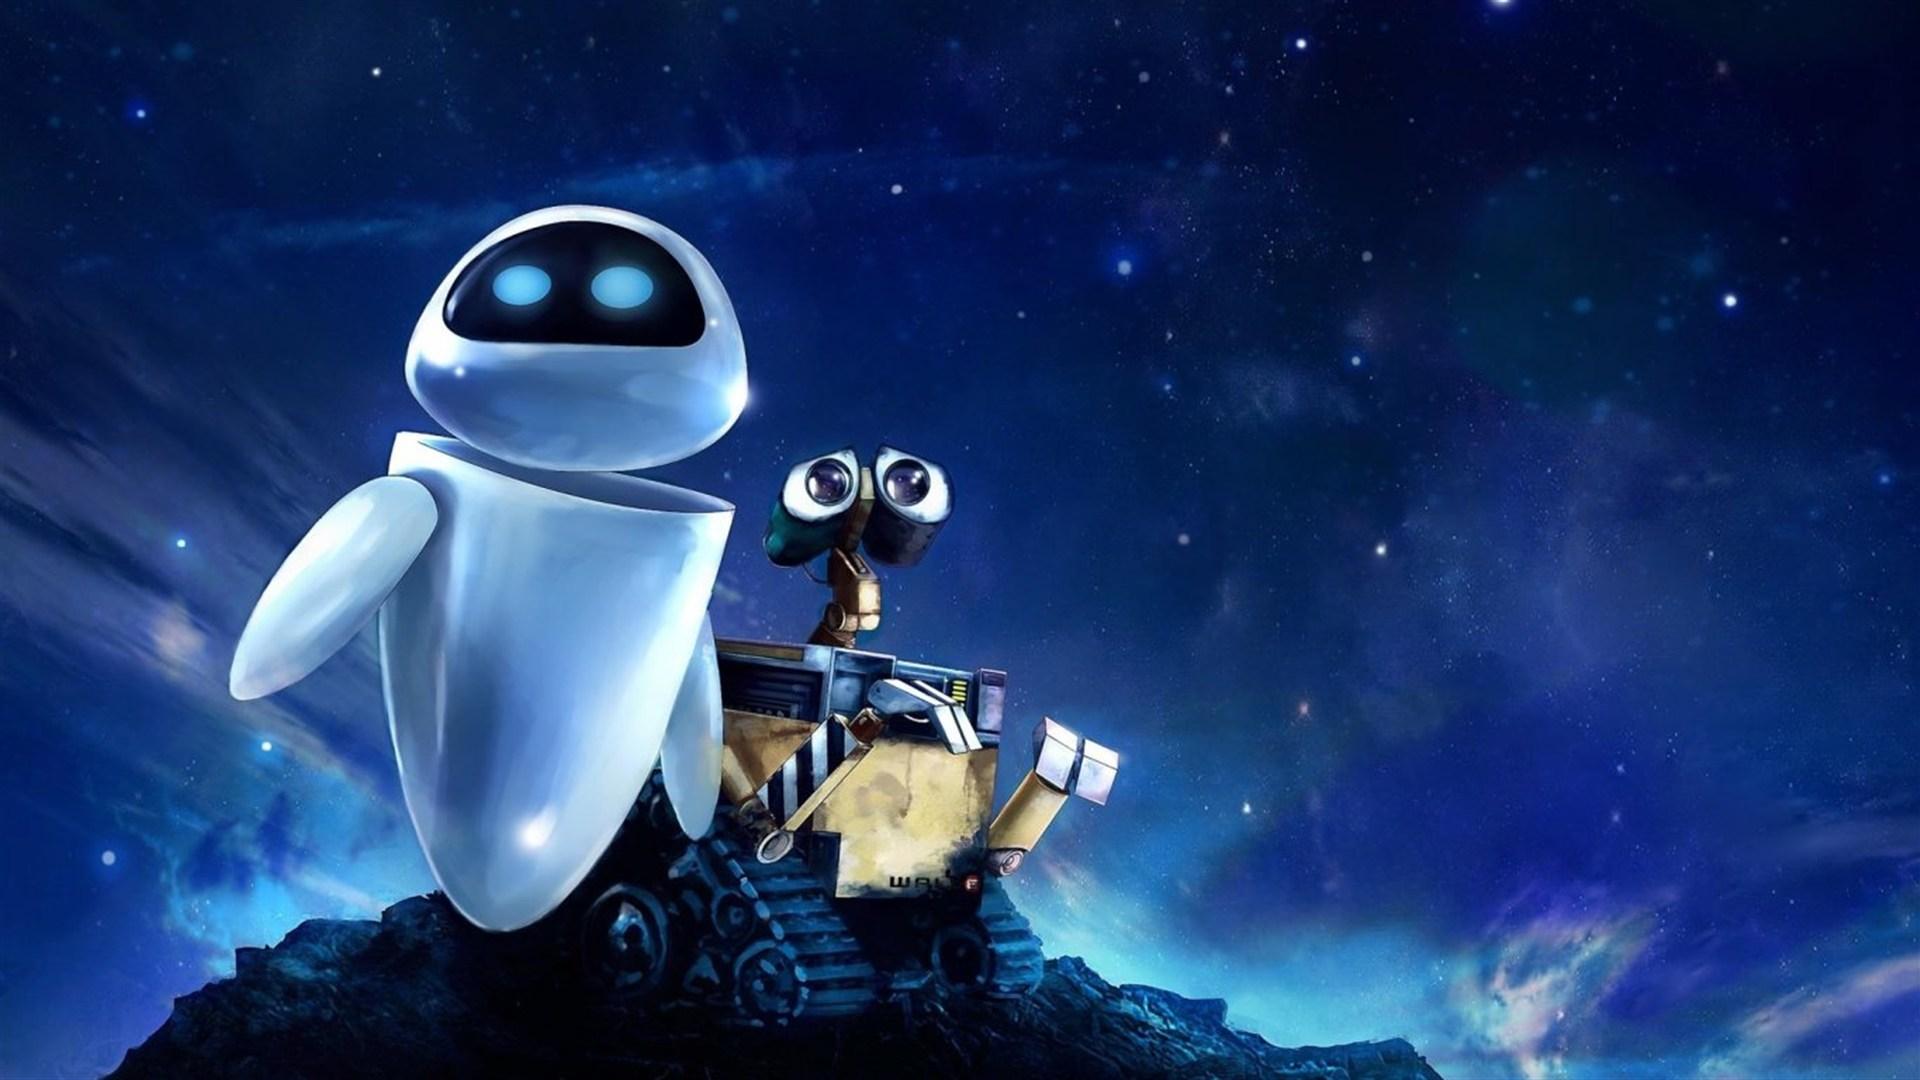 最温情的动画片,两个机器人跨越星球相爱,很多人看哭了